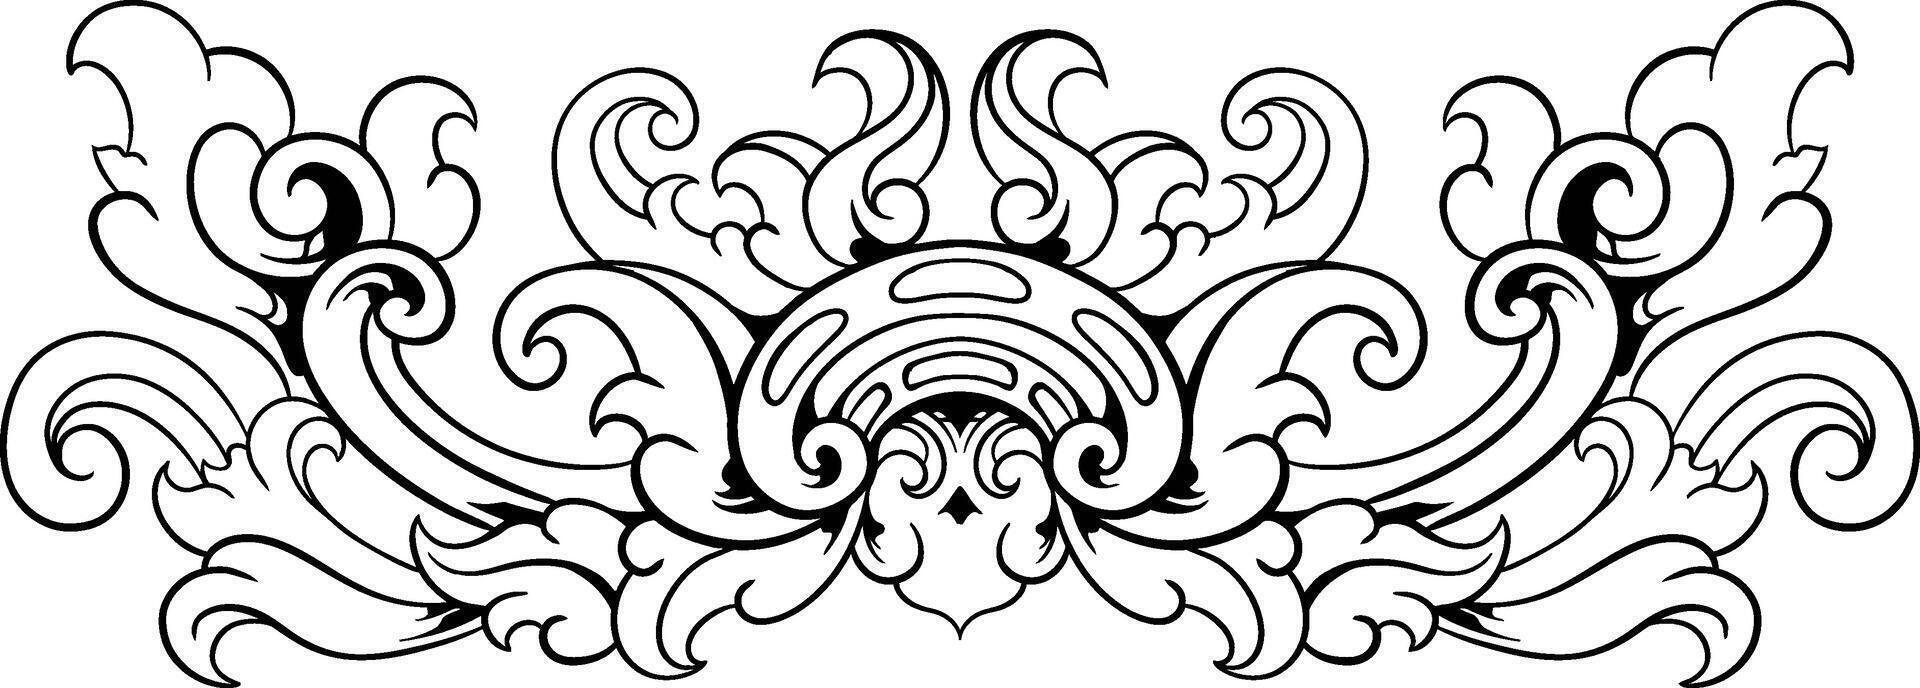 Clásico barroco victoriano marco frontera floral ornamento hoja Desplazarse grabado retro flor modelo decorativo diseño tatuaje negro y blanco vector